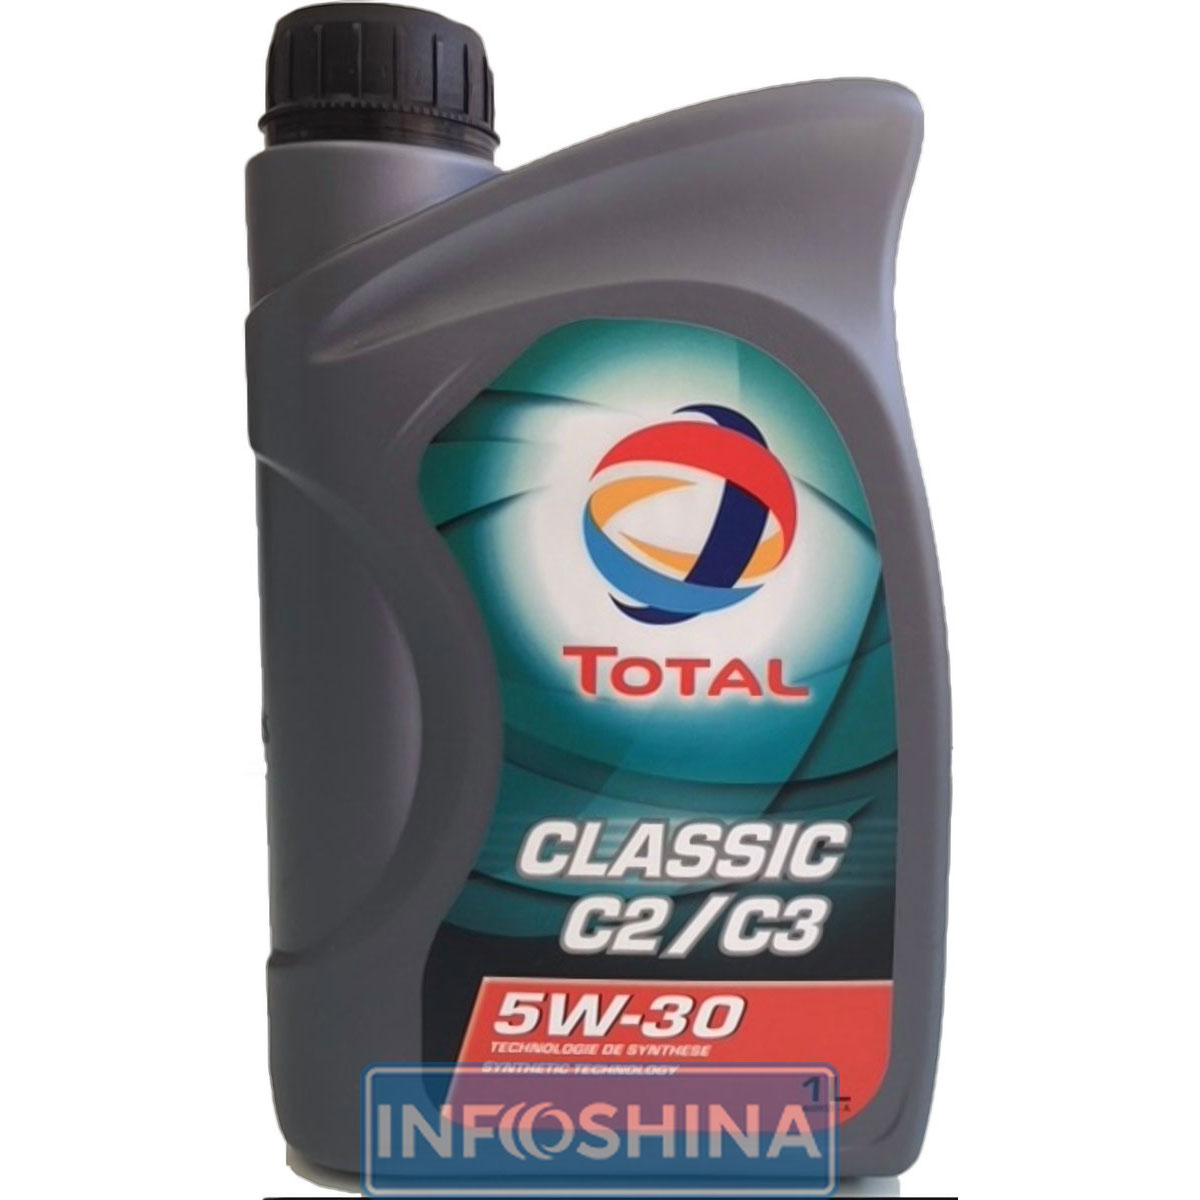 Купить масло Total Classic C2/C3 5W-30 (1л)